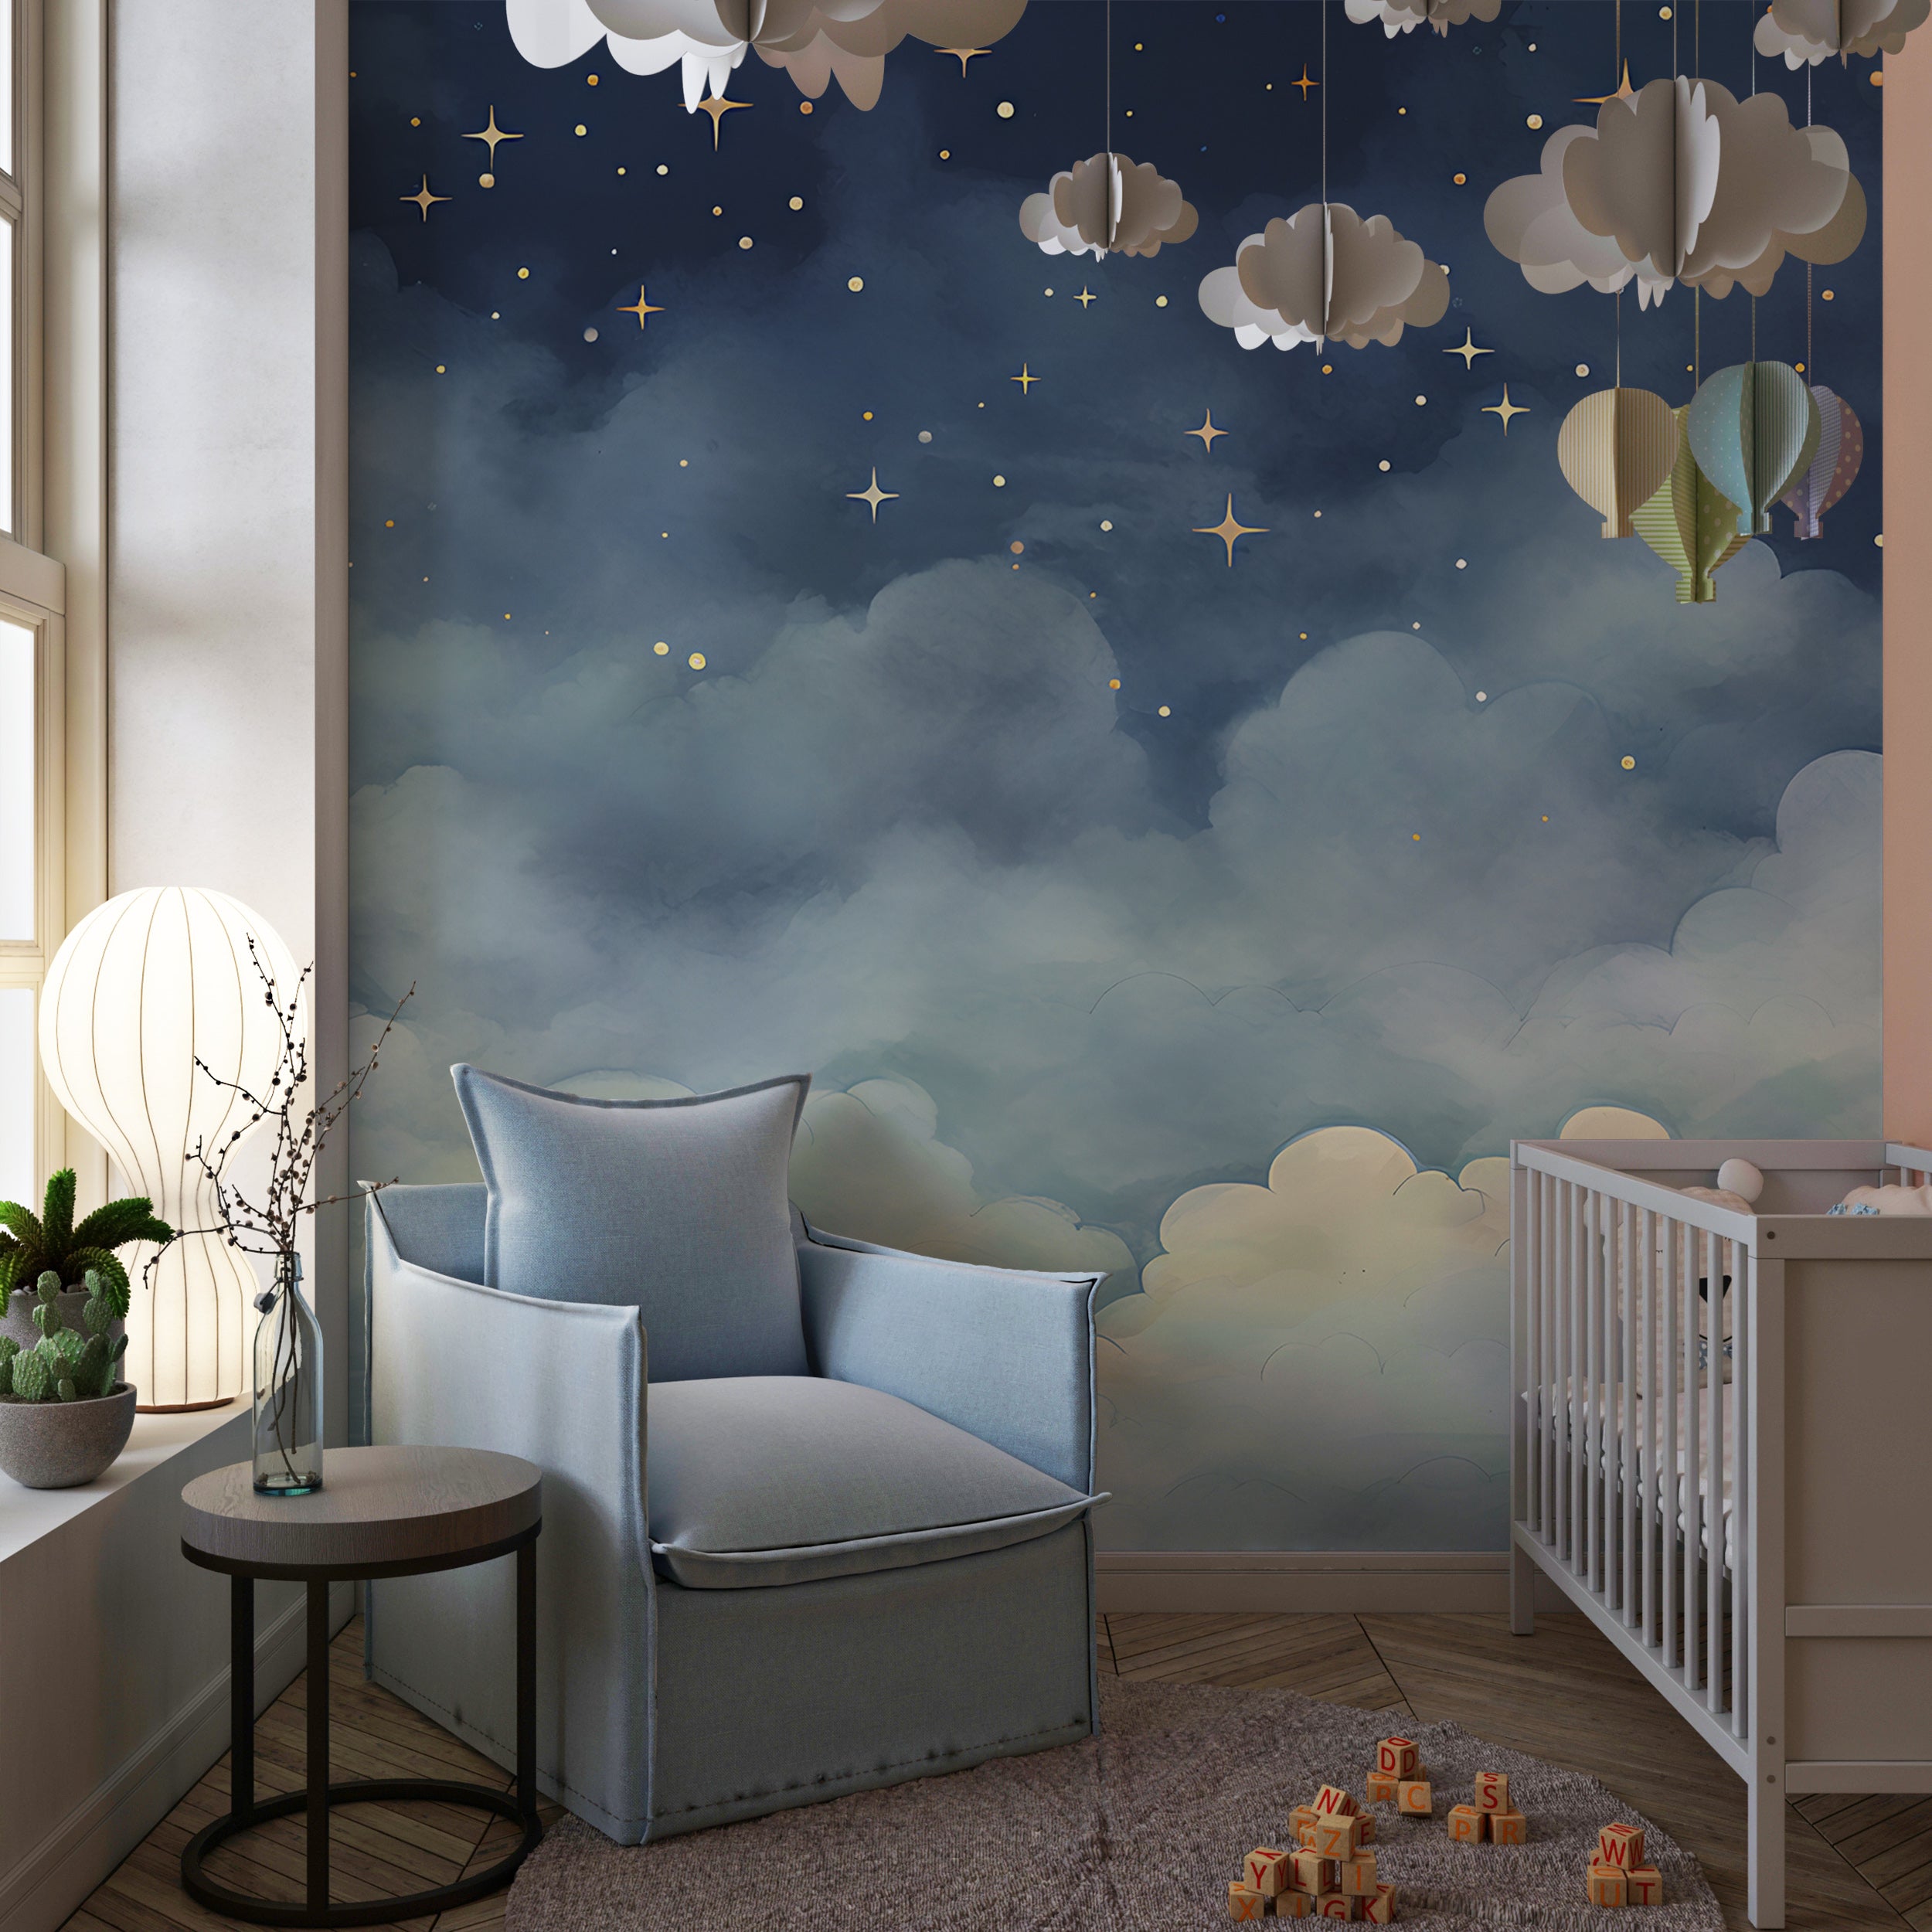 Celestial Nursery Theme Wall Art